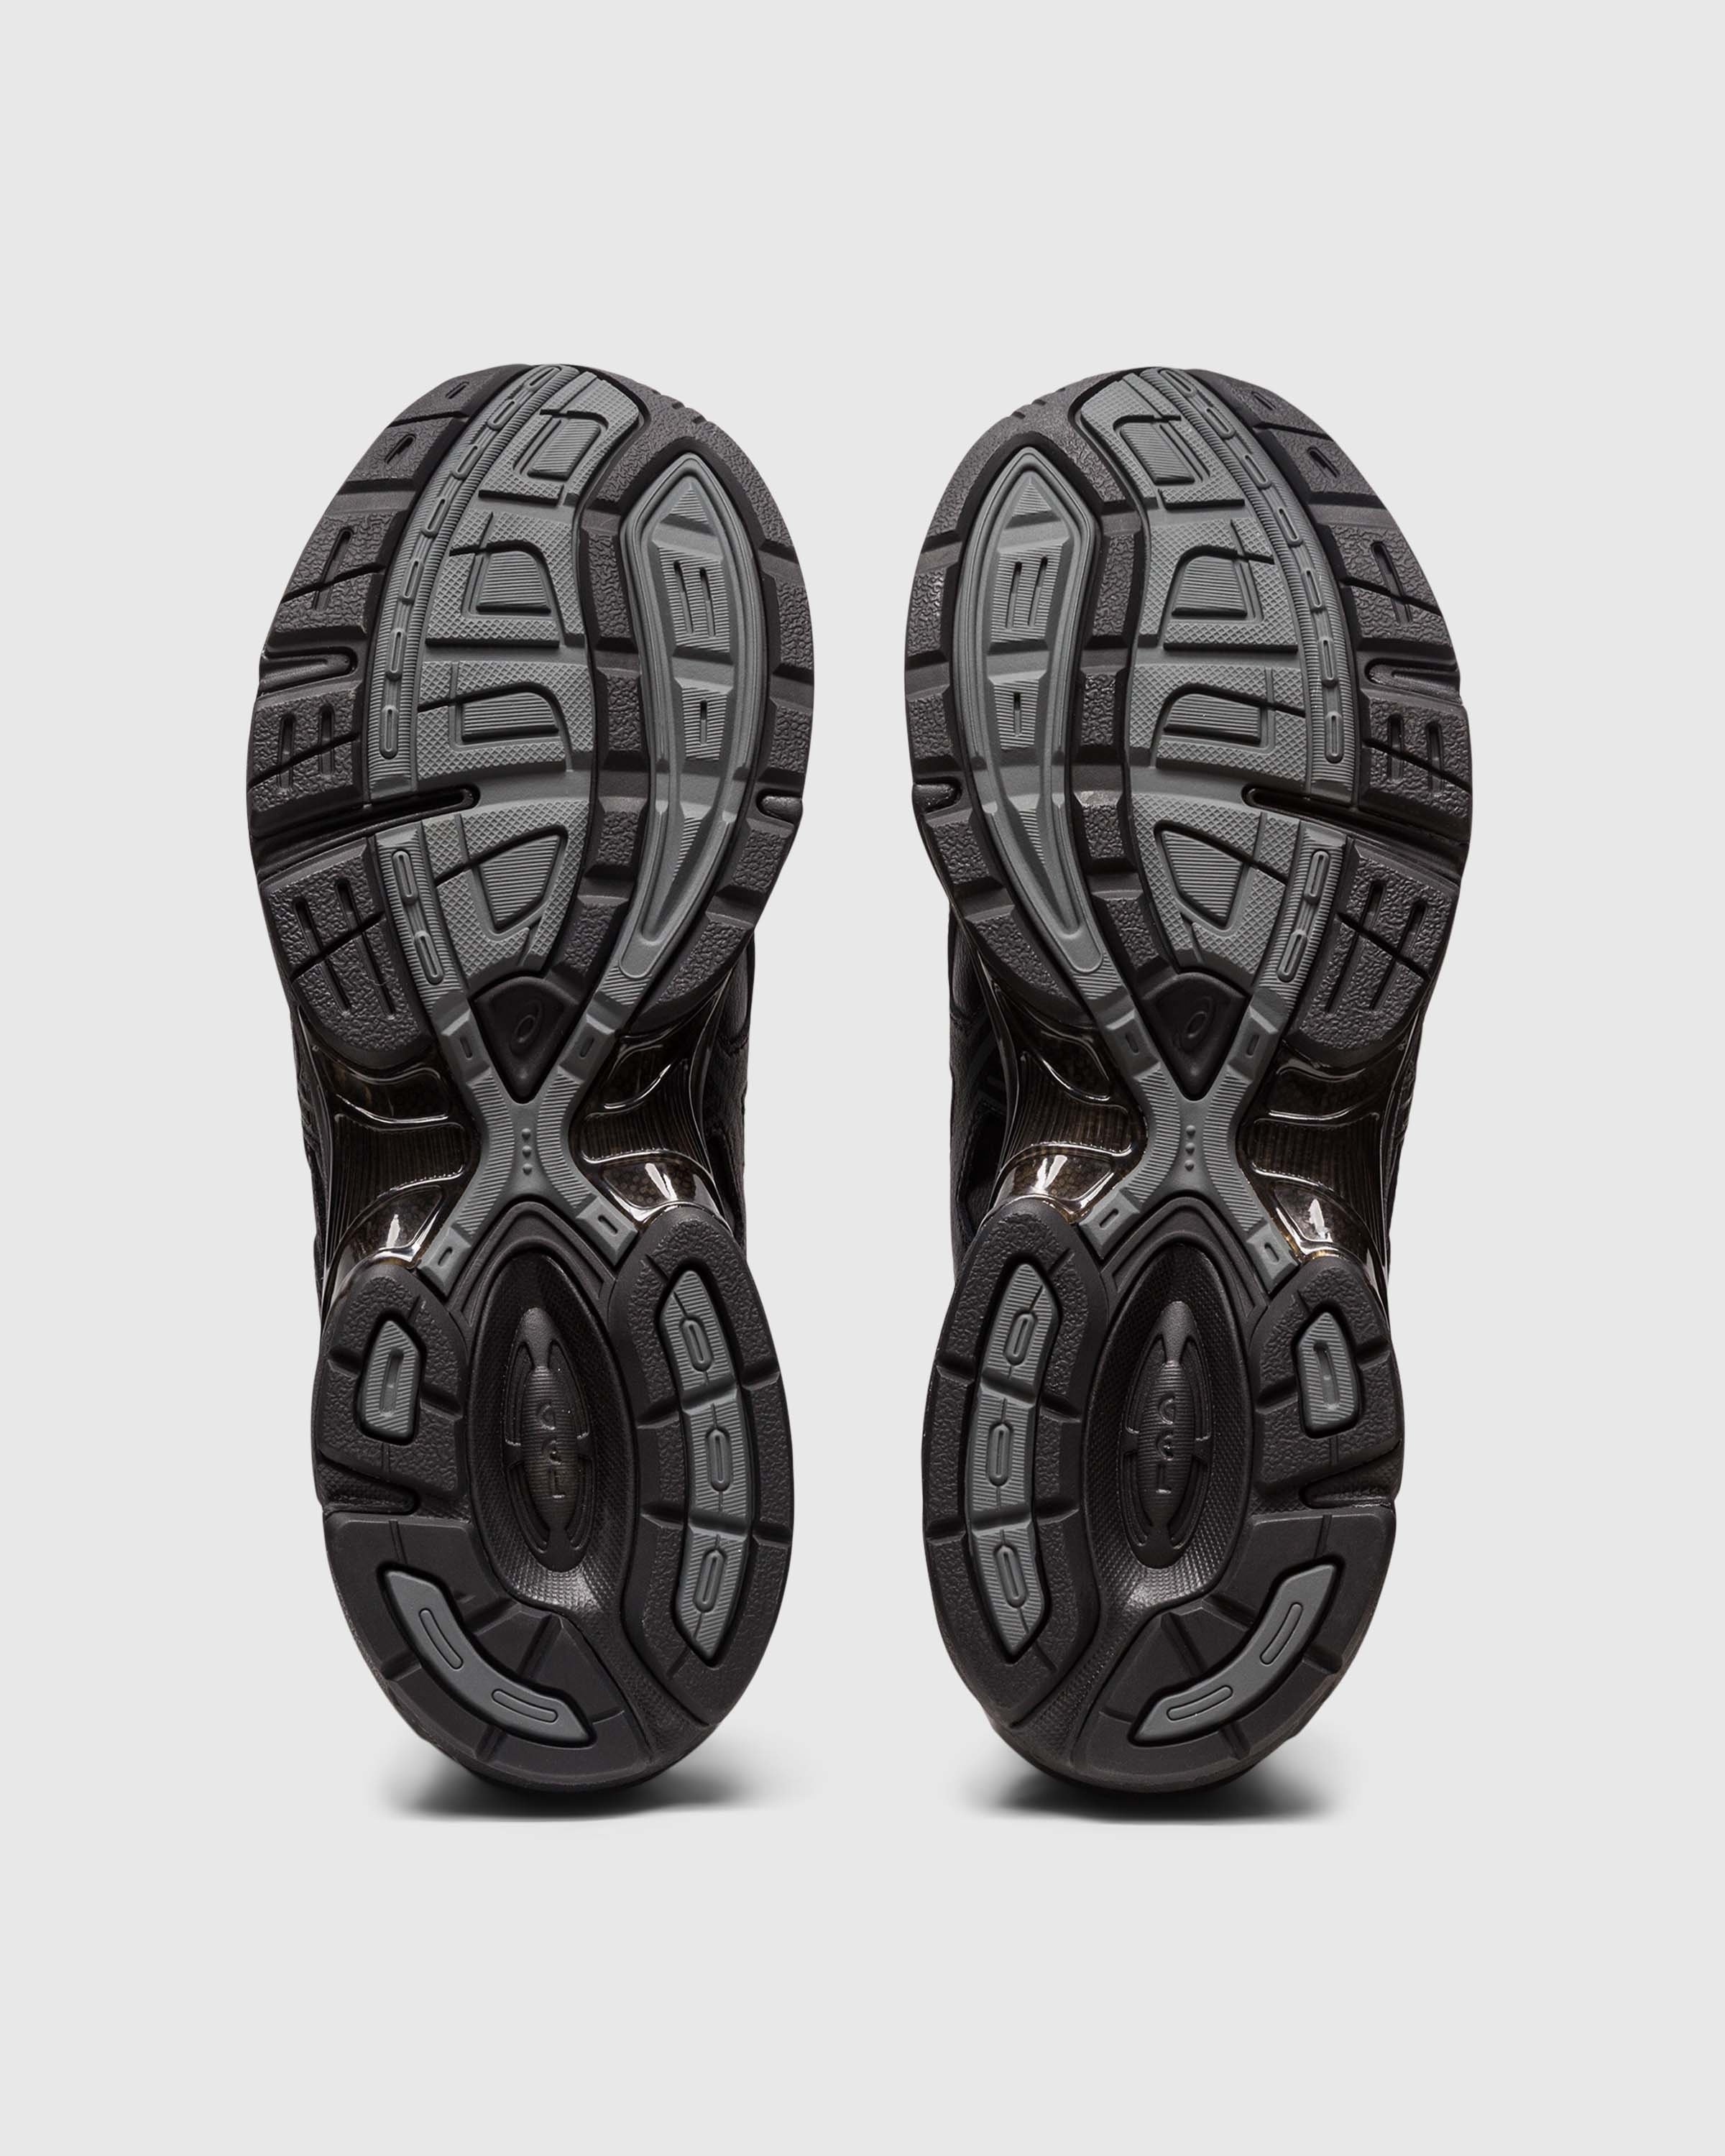 asics – GEL-1130 Black - Low Top Sneakers - Black - Image 6